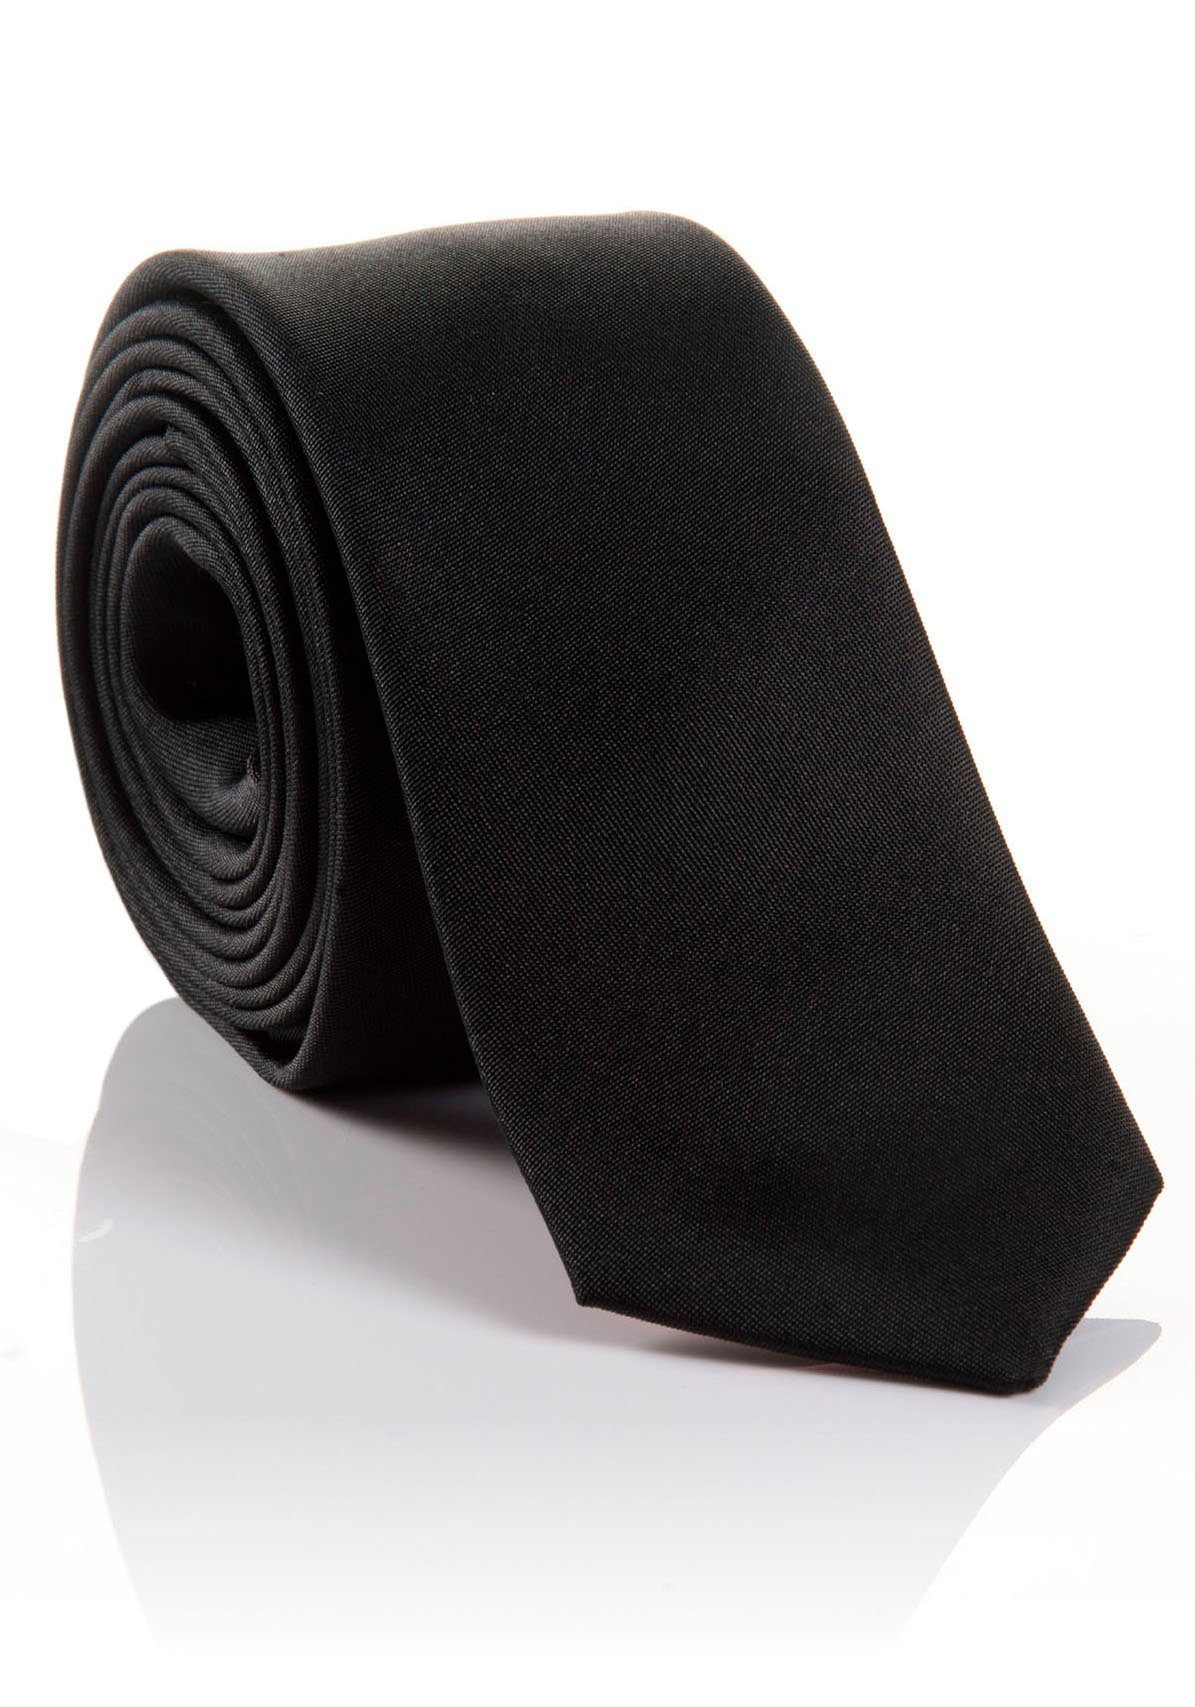 MONTI Krawatte LORENZO Hochwertig verarbeitete Seidenkrawatte mit hohem Tragekomfort black